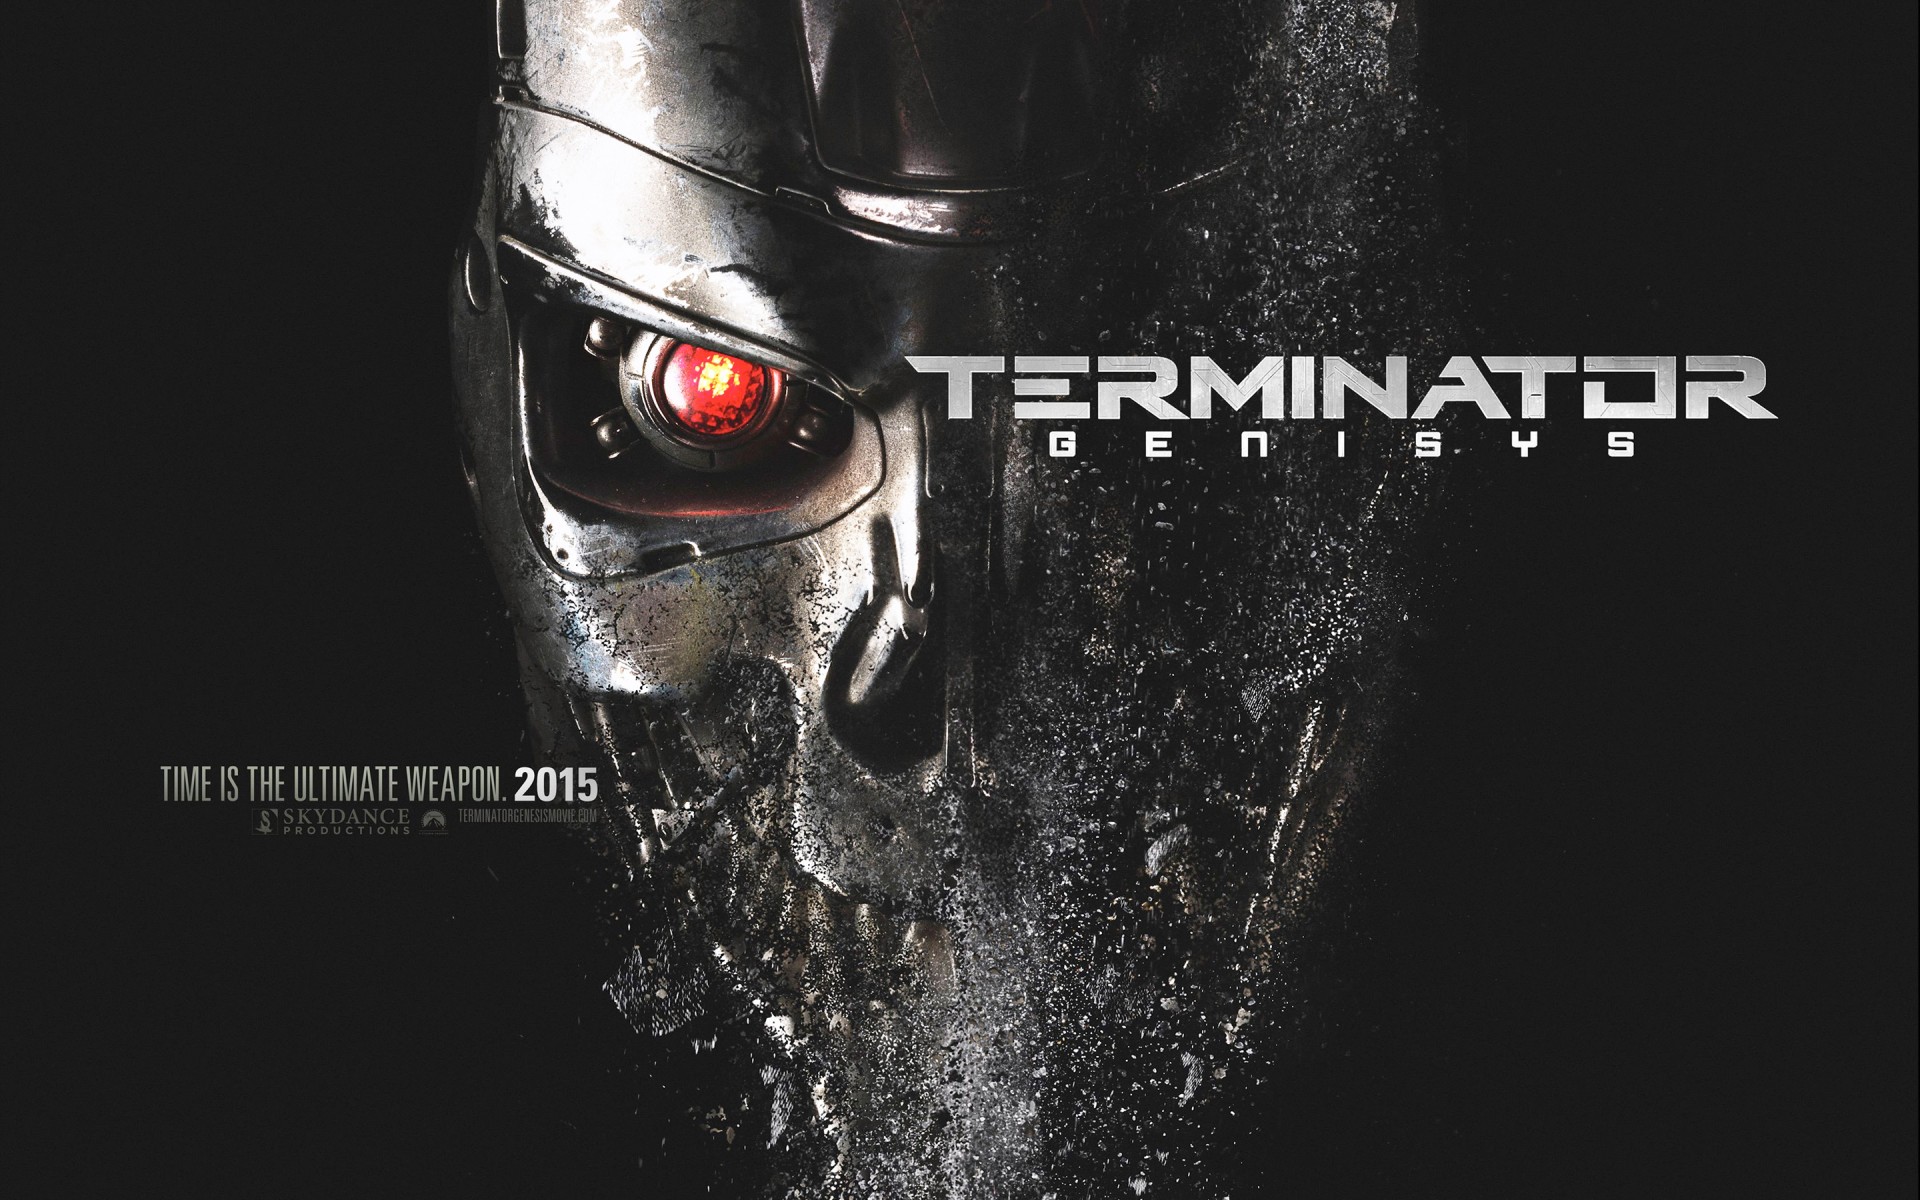 Картинки Terminator, 2015, Genisys фото и обои на рабочий стол